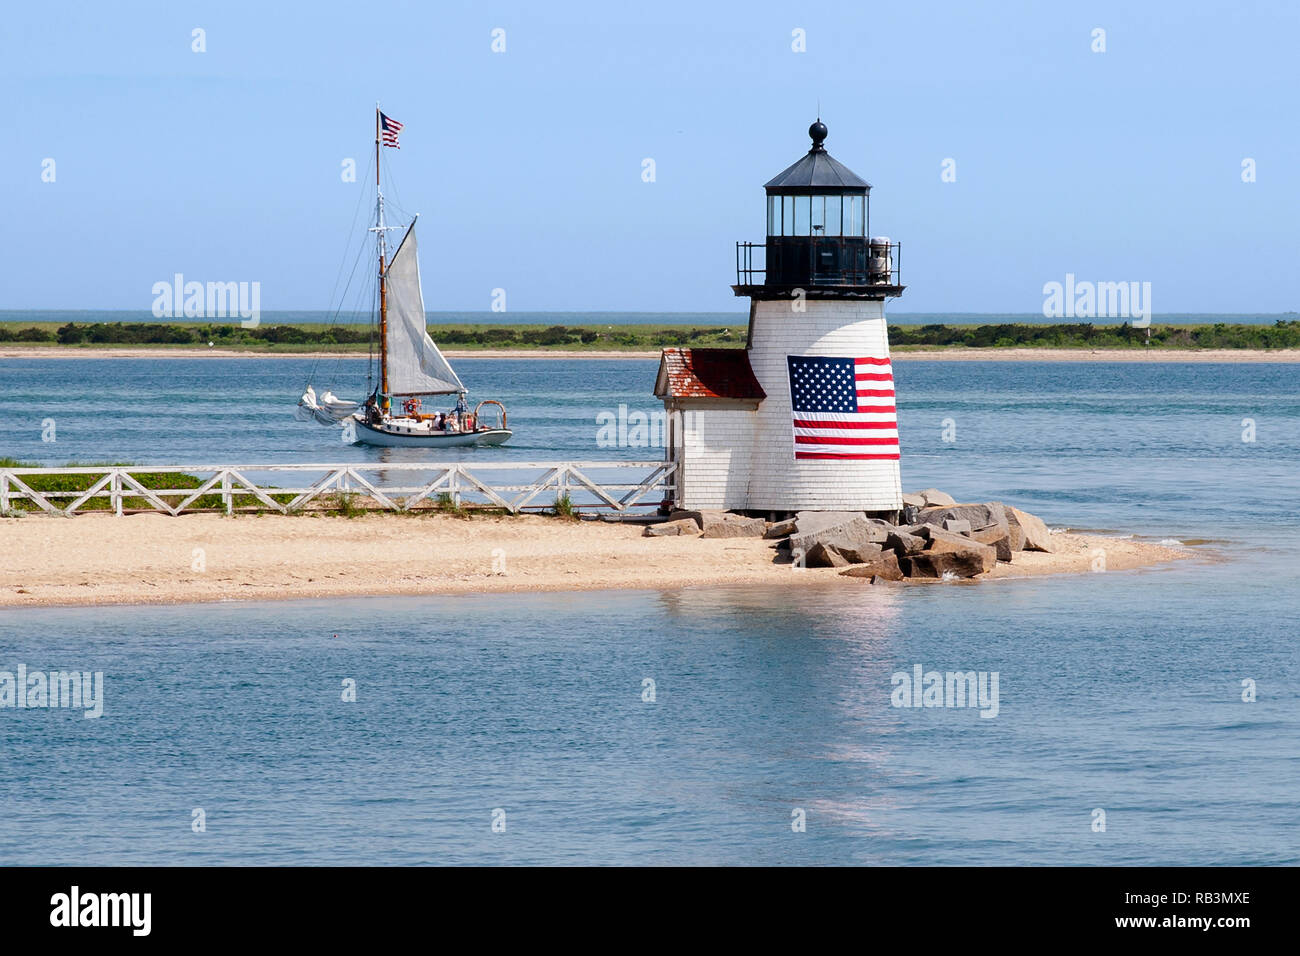 Brant Point Lighthouse, con su bandera americana envuelto alrededor de su torre de madera, guías de un velero a la isla de Nantucket Harbor en Massachusetts. Foto de stock